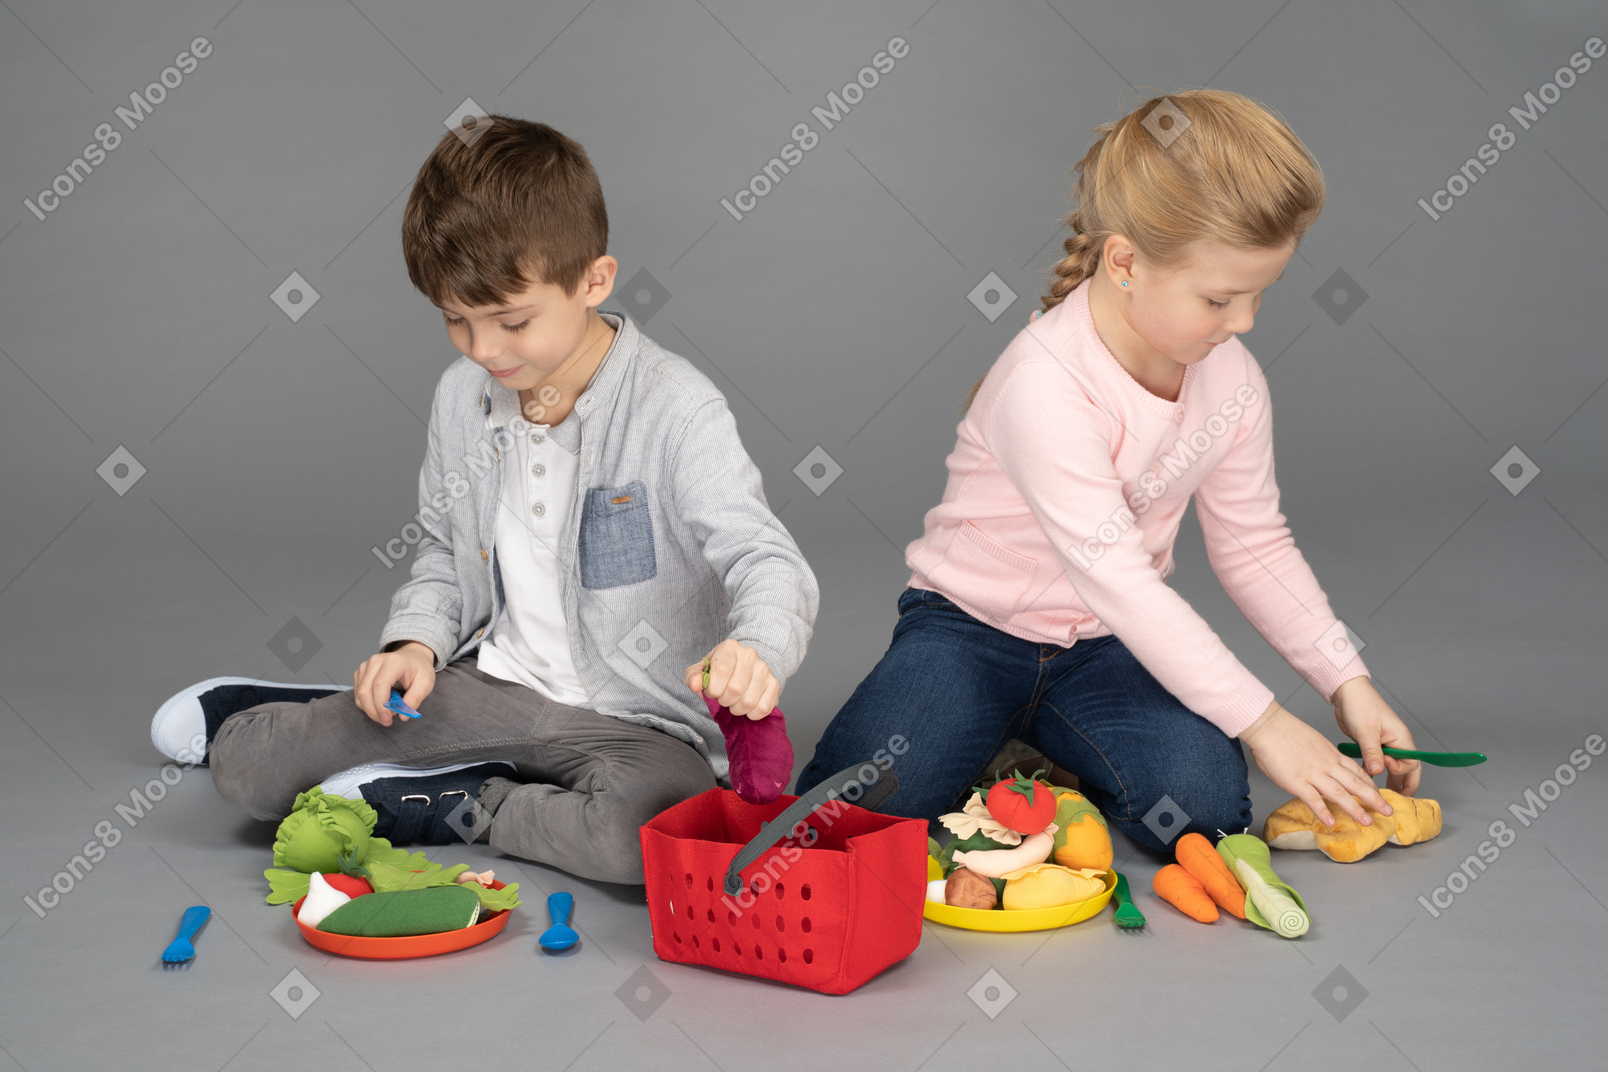 Kinder spielen mit essensspielzeug